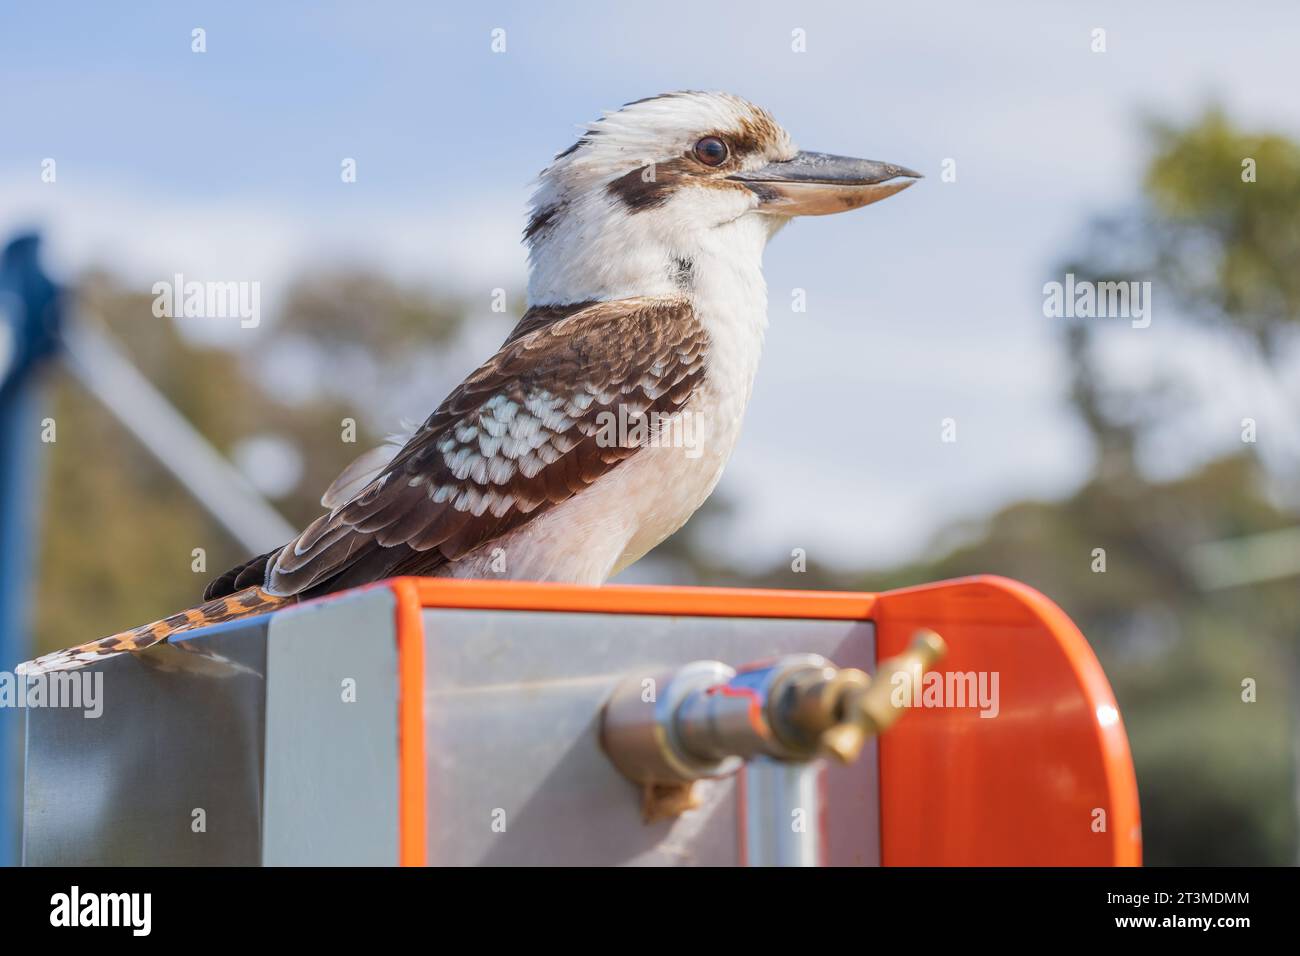 Un Kookaburra australiano seduto su un rubinetto a Fingal Bay nel nuovo Galles del Sud, Australia Foto Stock